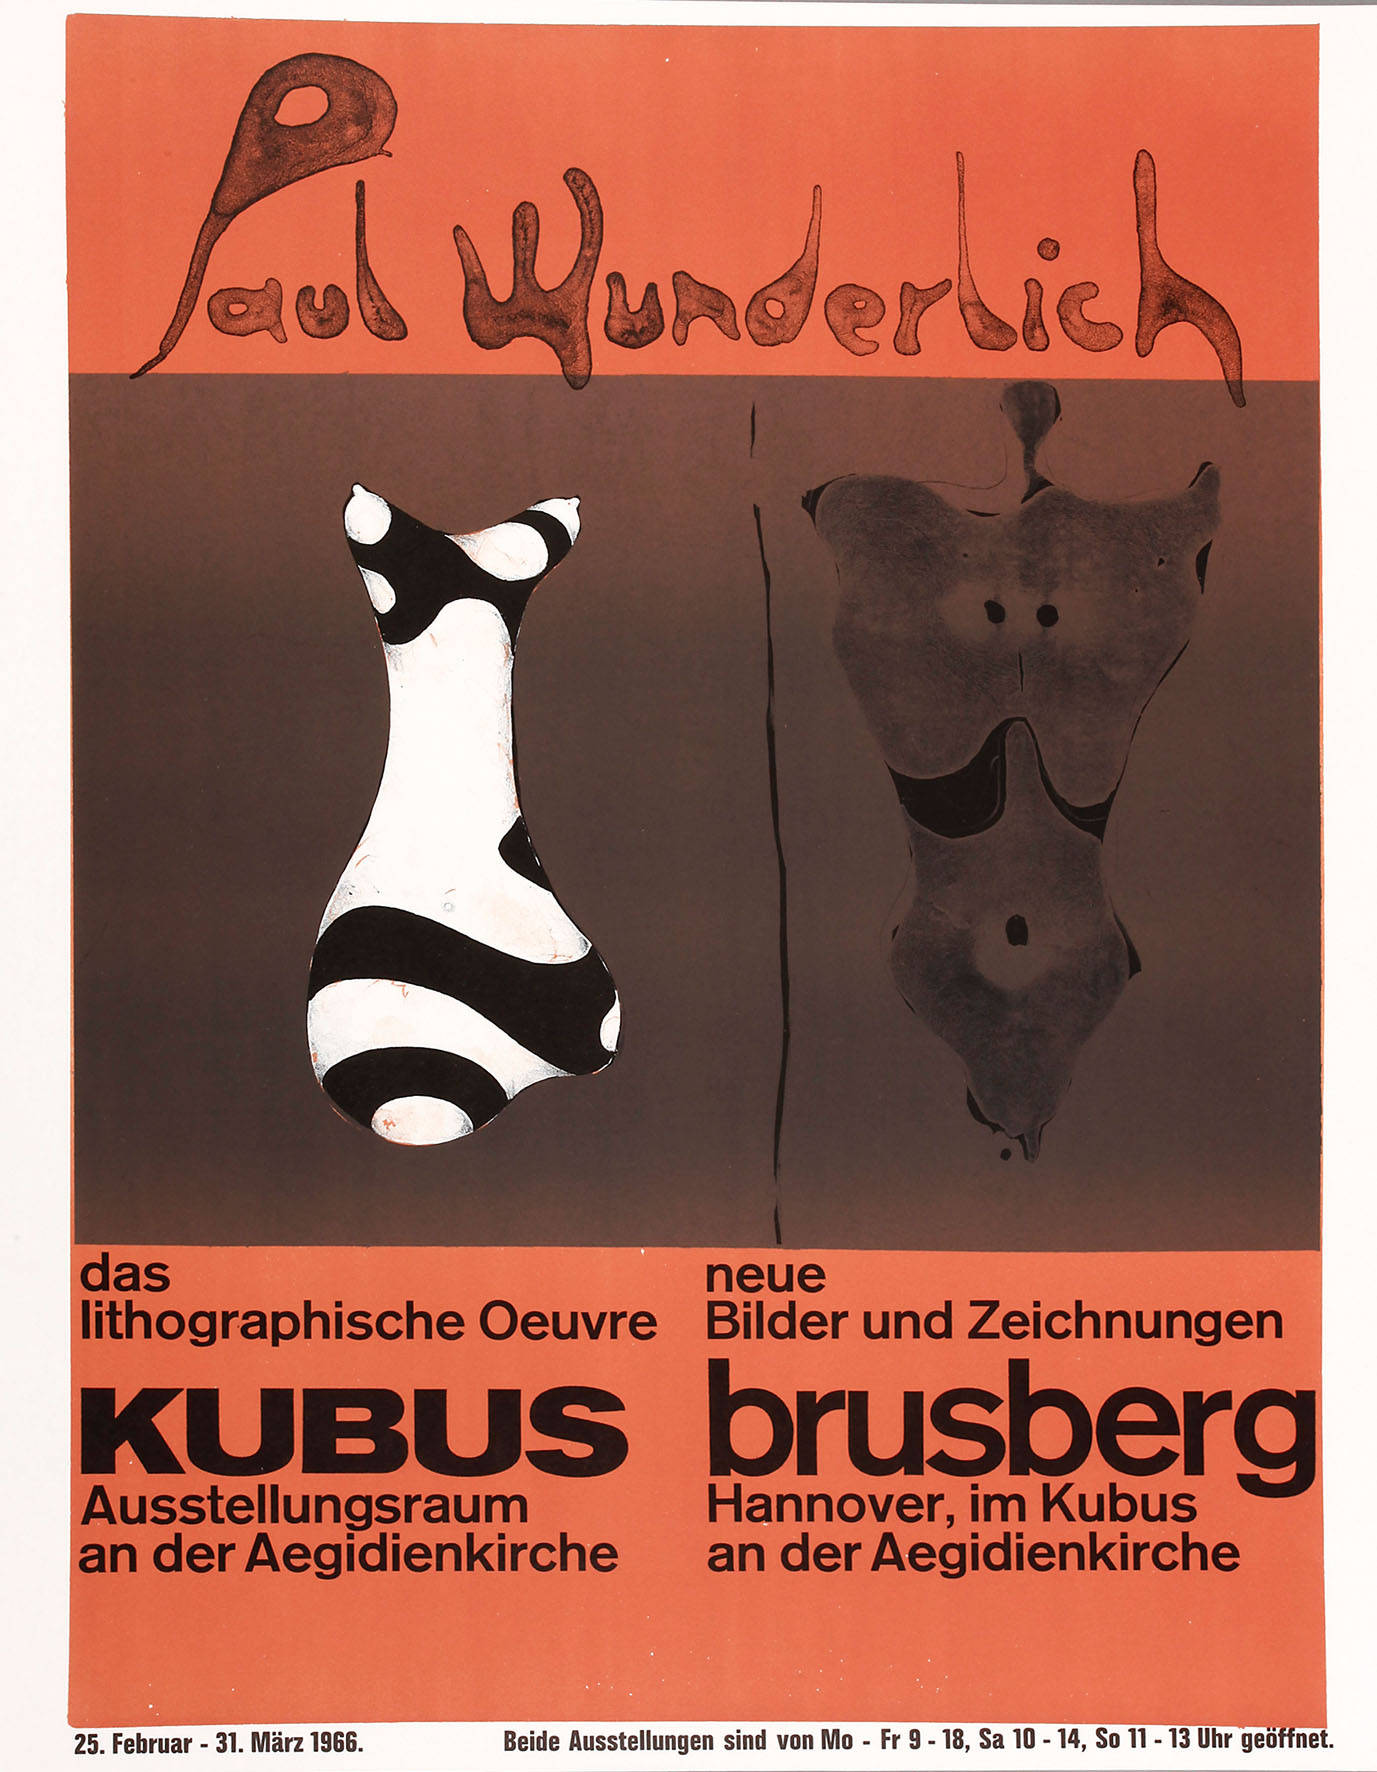 Prof. Paul Wunderlich, originalgraphisches Plakat